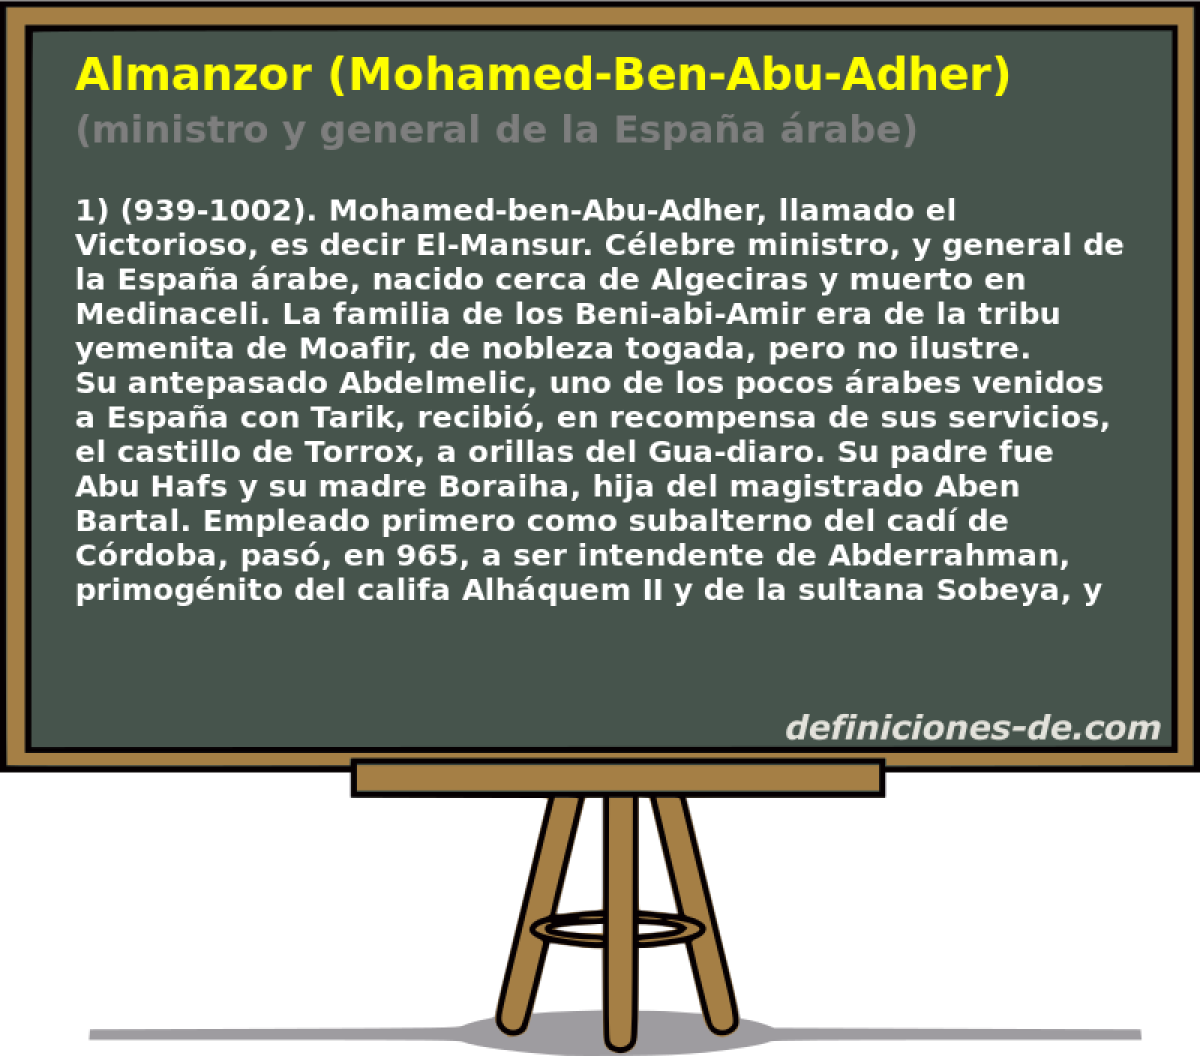 Almanzor (Mohamed-Ben-Abu-Adher) (ministro y general de la Espaa rabe)